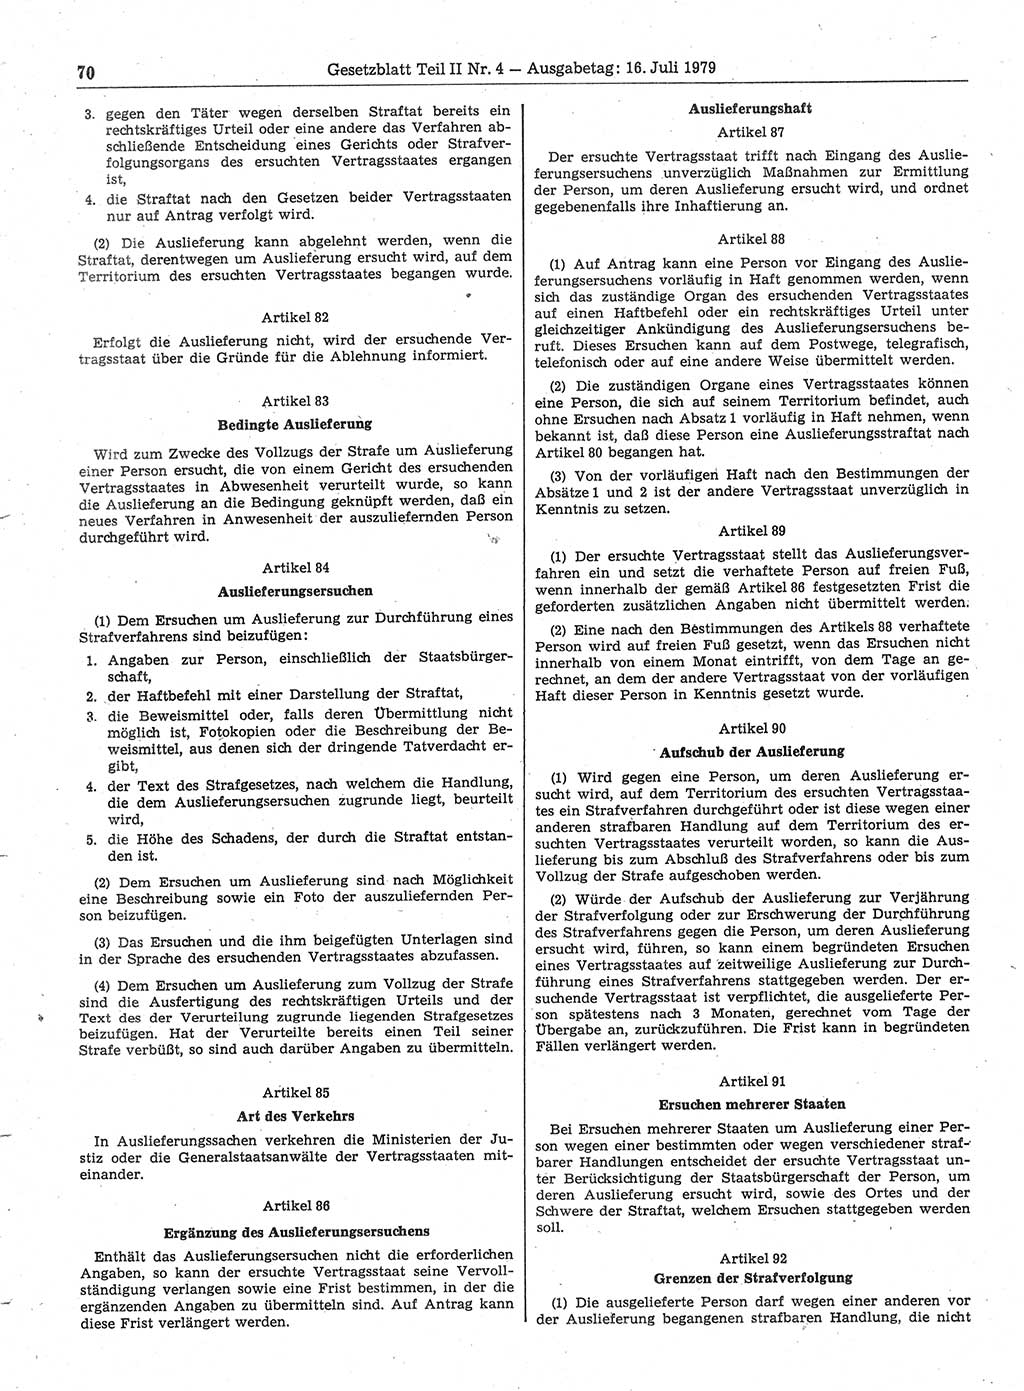 Gesetzblatt (GBl.) der Deutschen Demokratischen Republik (DDR) Teil ⅠⅠ 1979, Seite 70 (GBl. DDR ⅠⅠ 1979, S. 70)